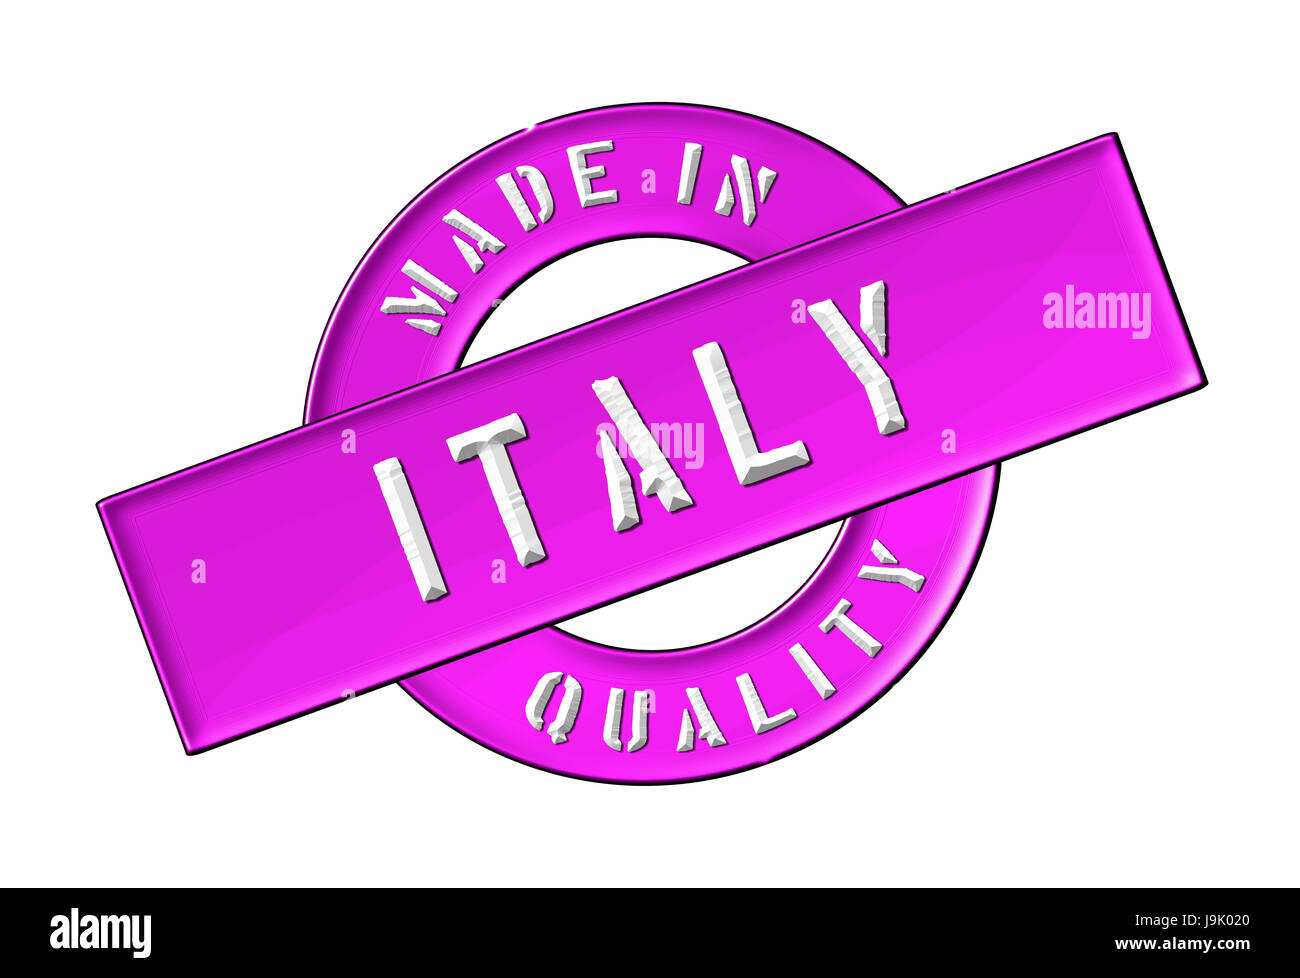 Rome, roma, italia, italy, presentation, isolated, venice, Rome, roma, pizza, Stock Photo